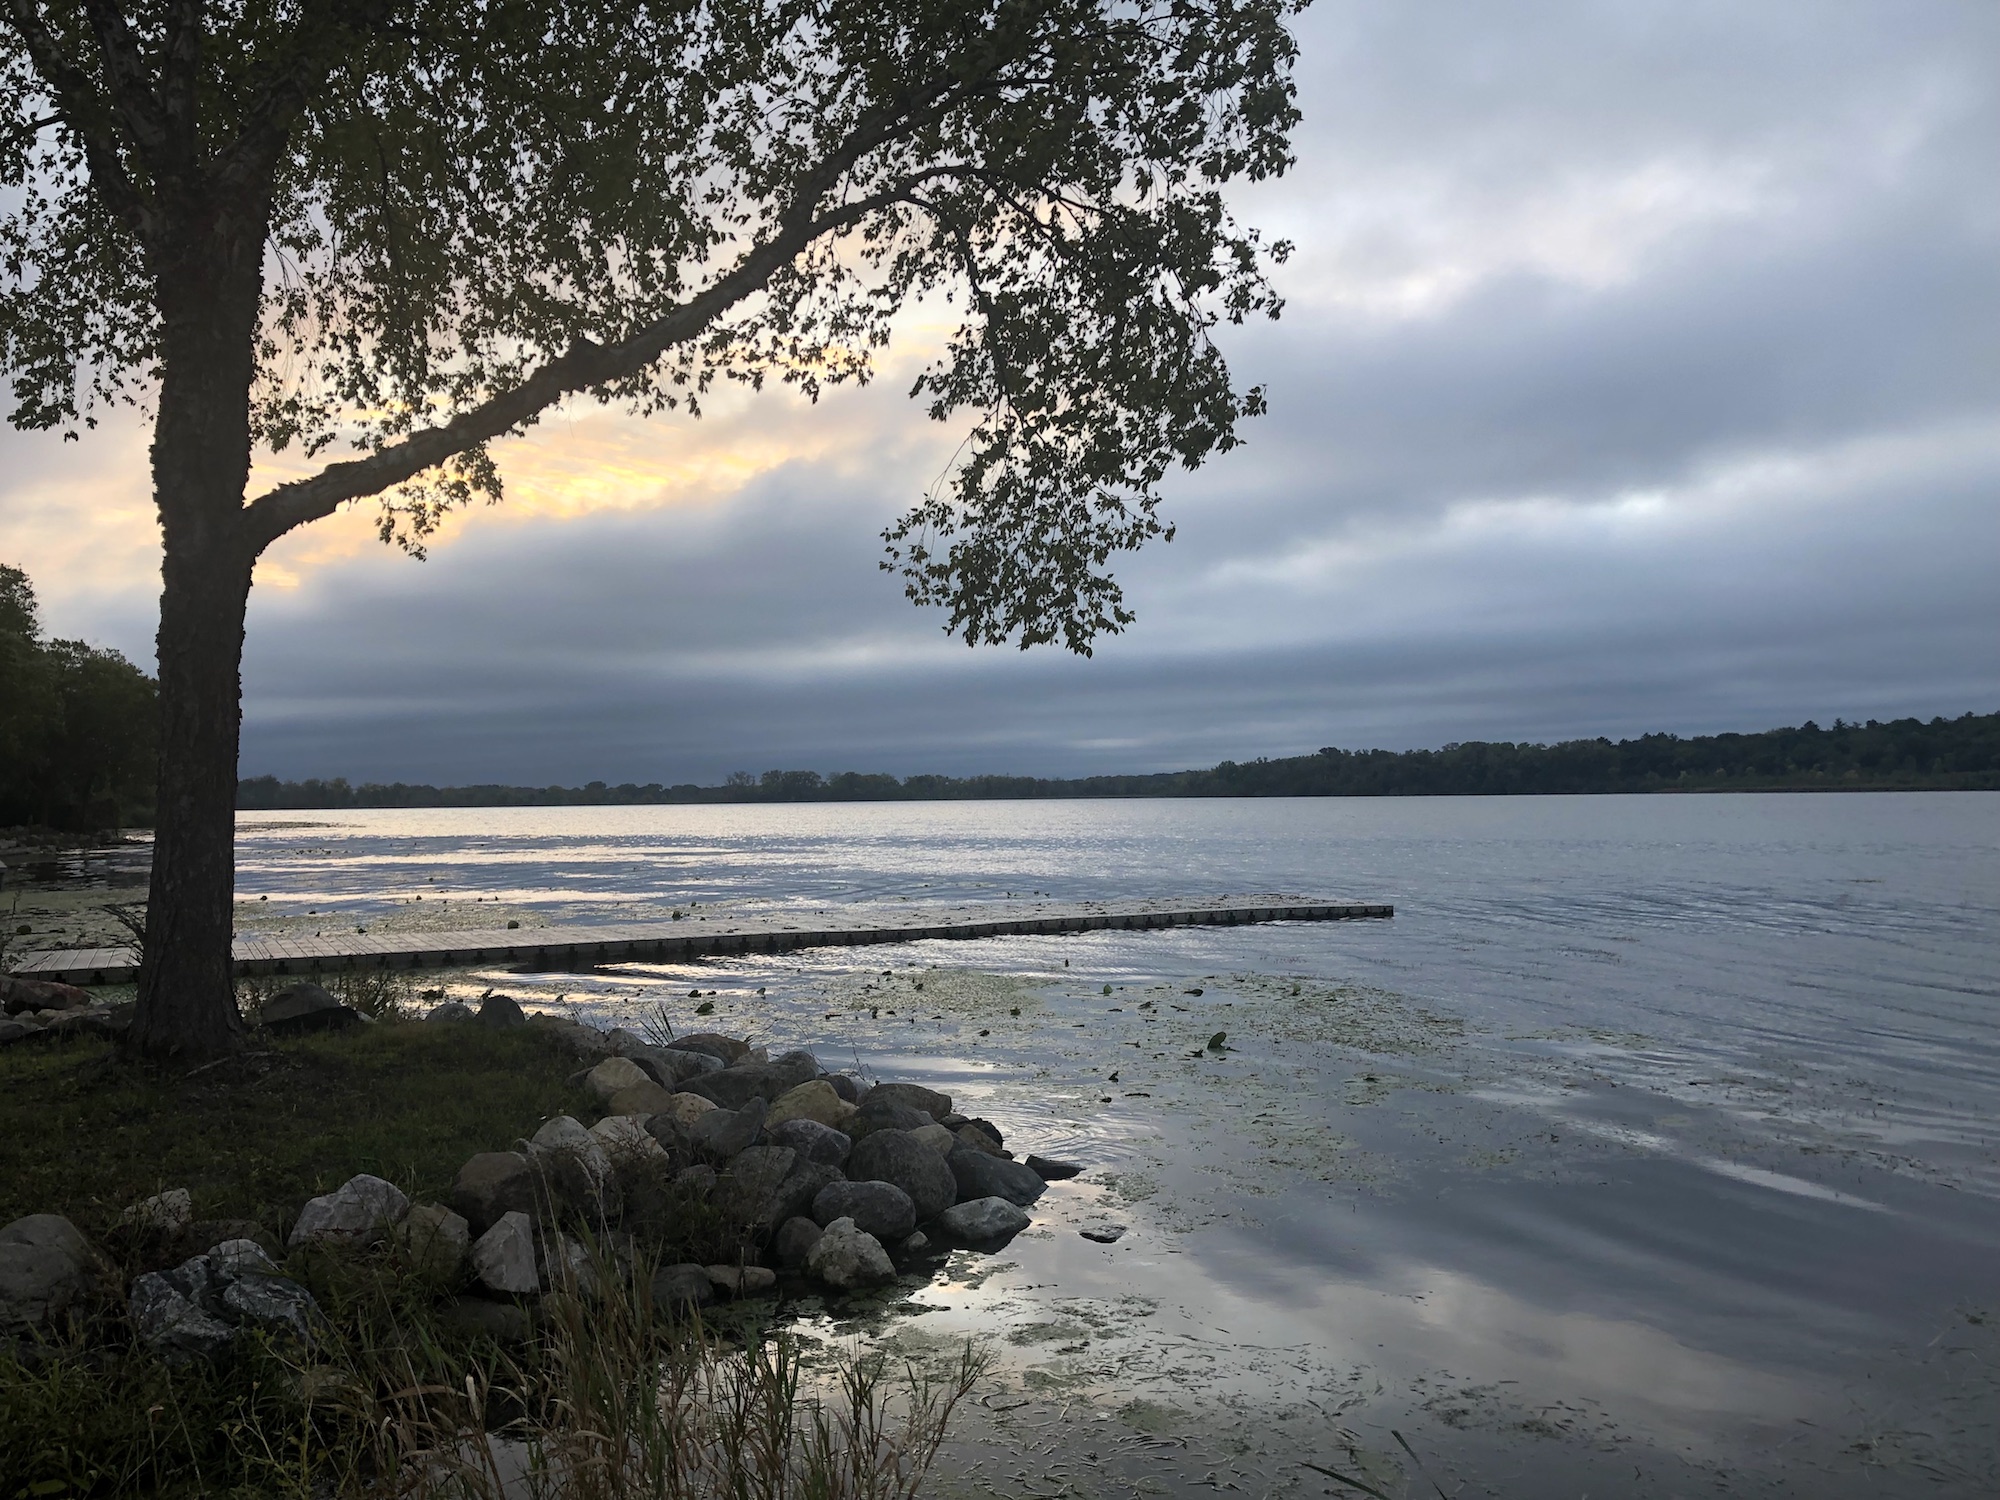 Lake Wingra on September 25, 2019.